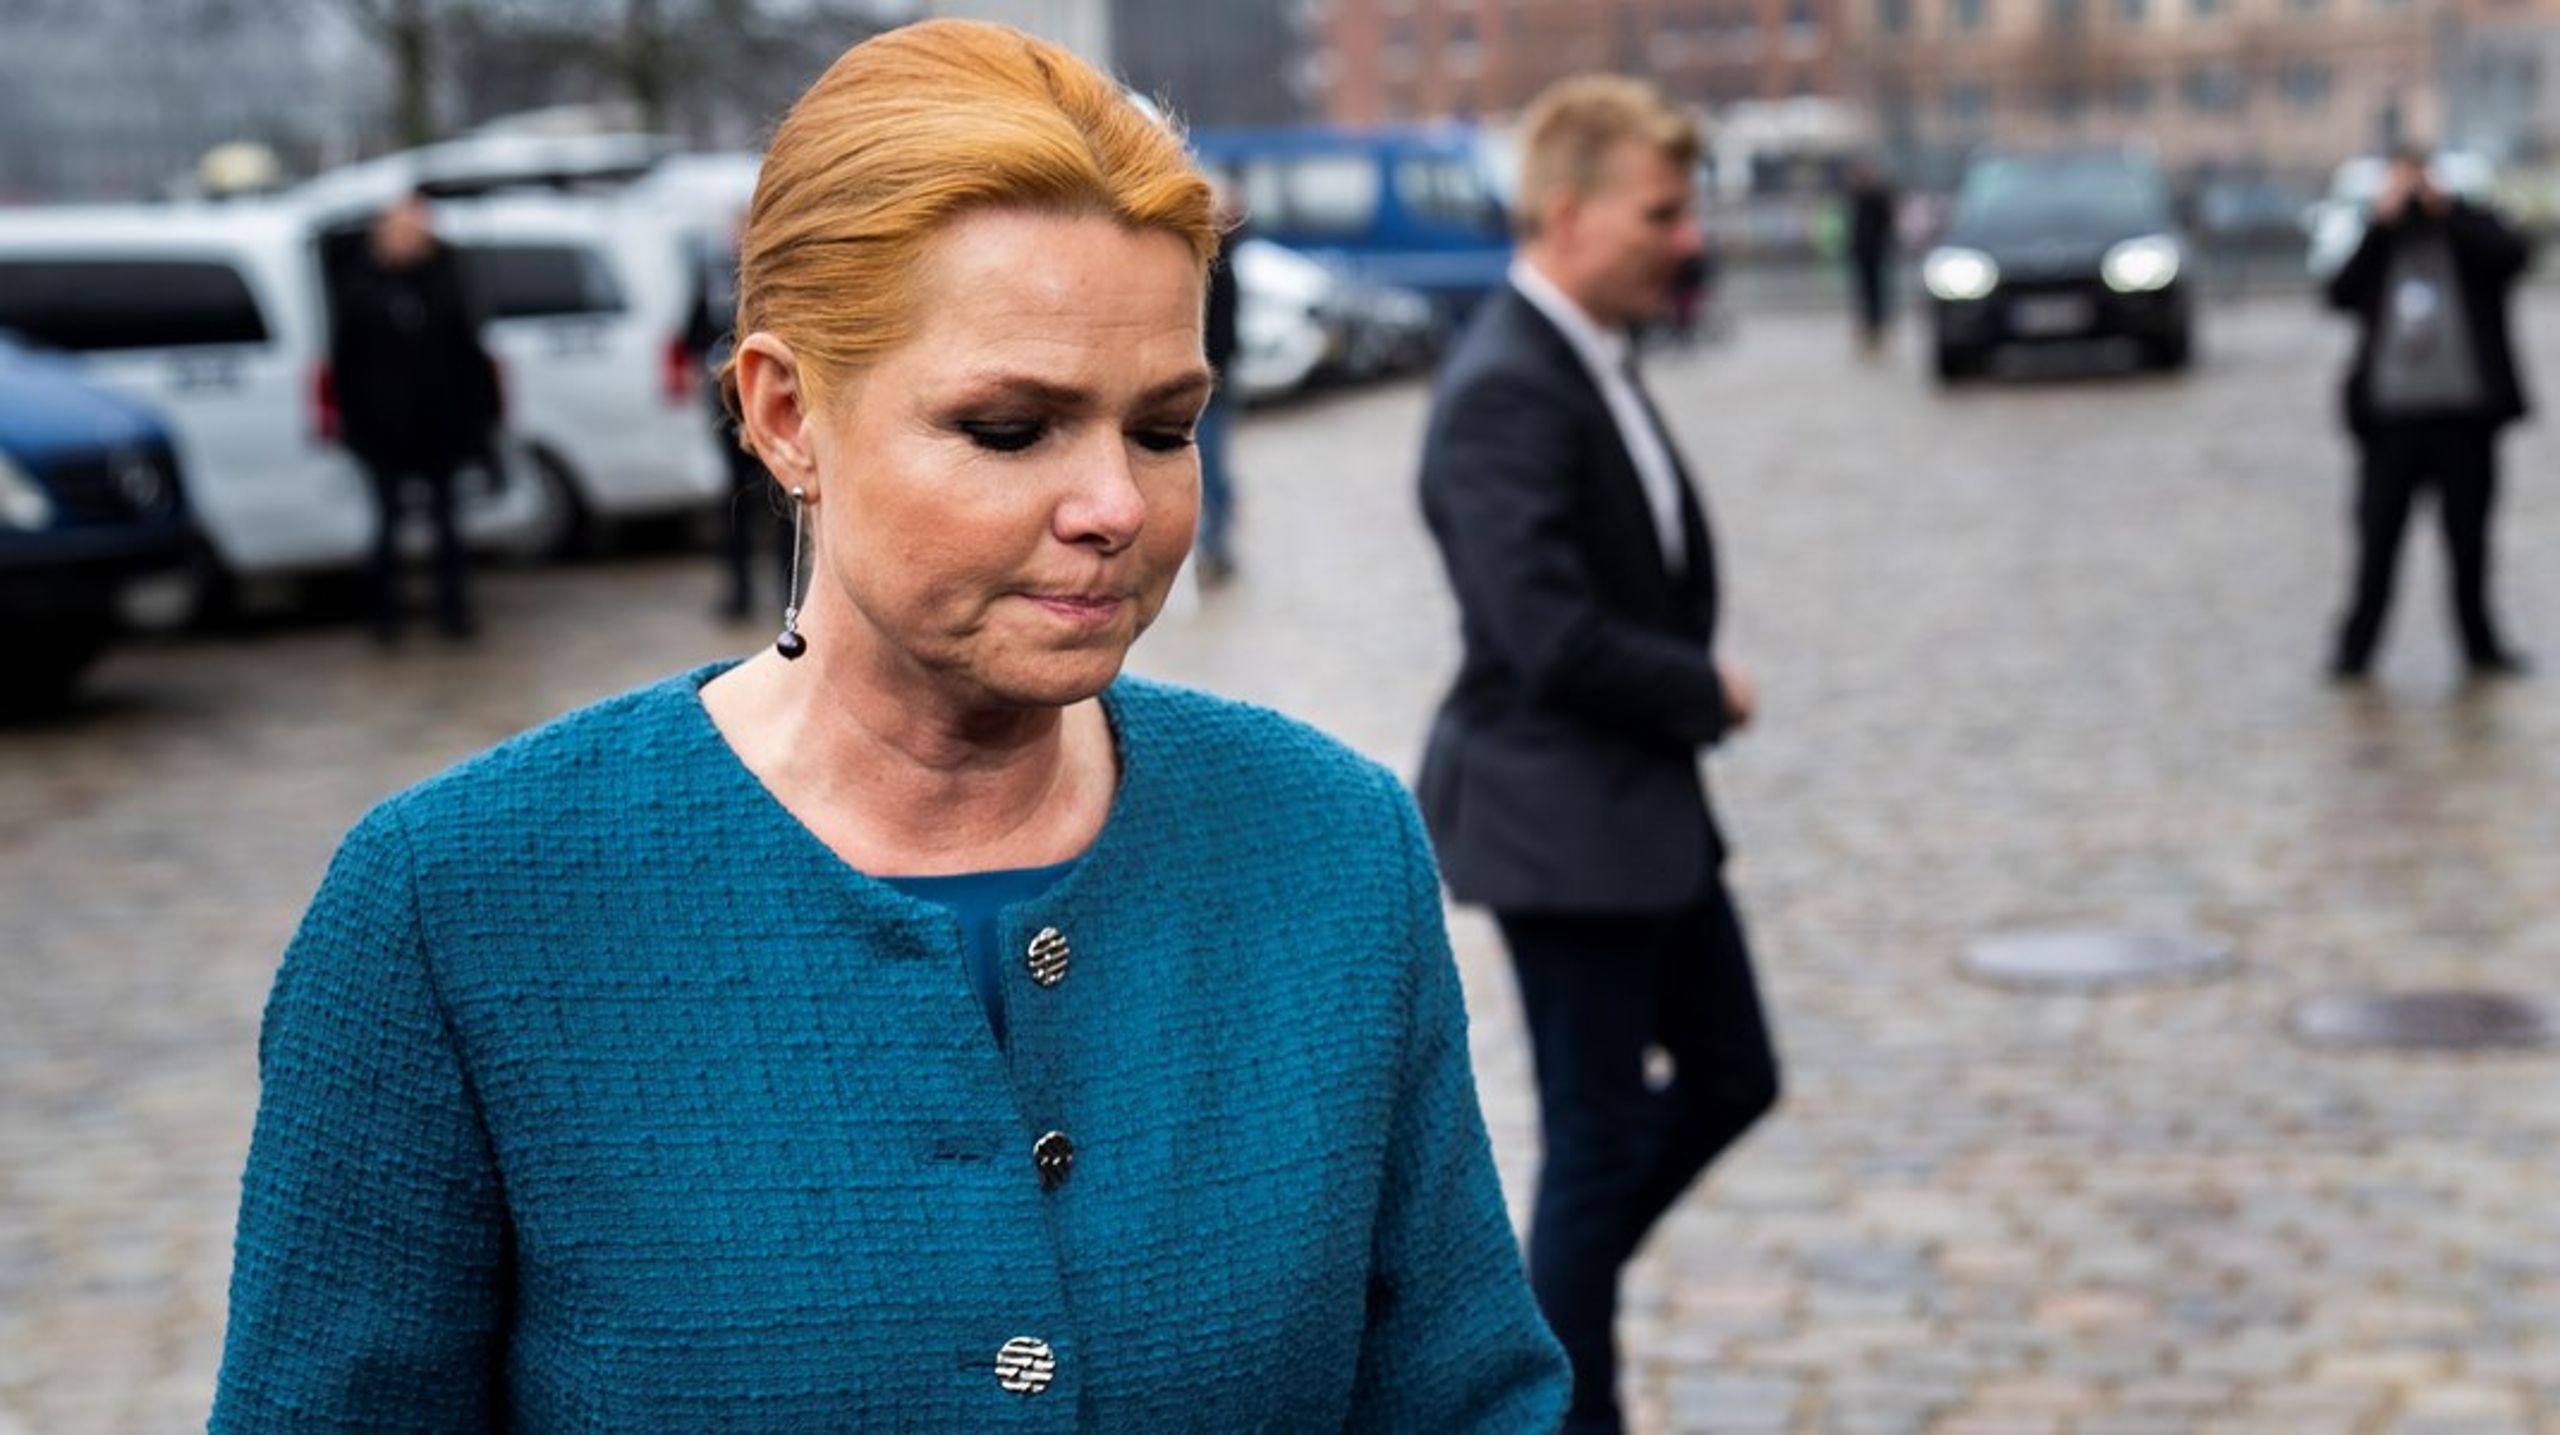 25 ud af 26 dommere i Rigsretten har fundet den tidligere udlændinge- og integrationsminister Inger Støjberg skyldig i at have overtrådt loven forsætligt. Nu afsoner hun straffen.